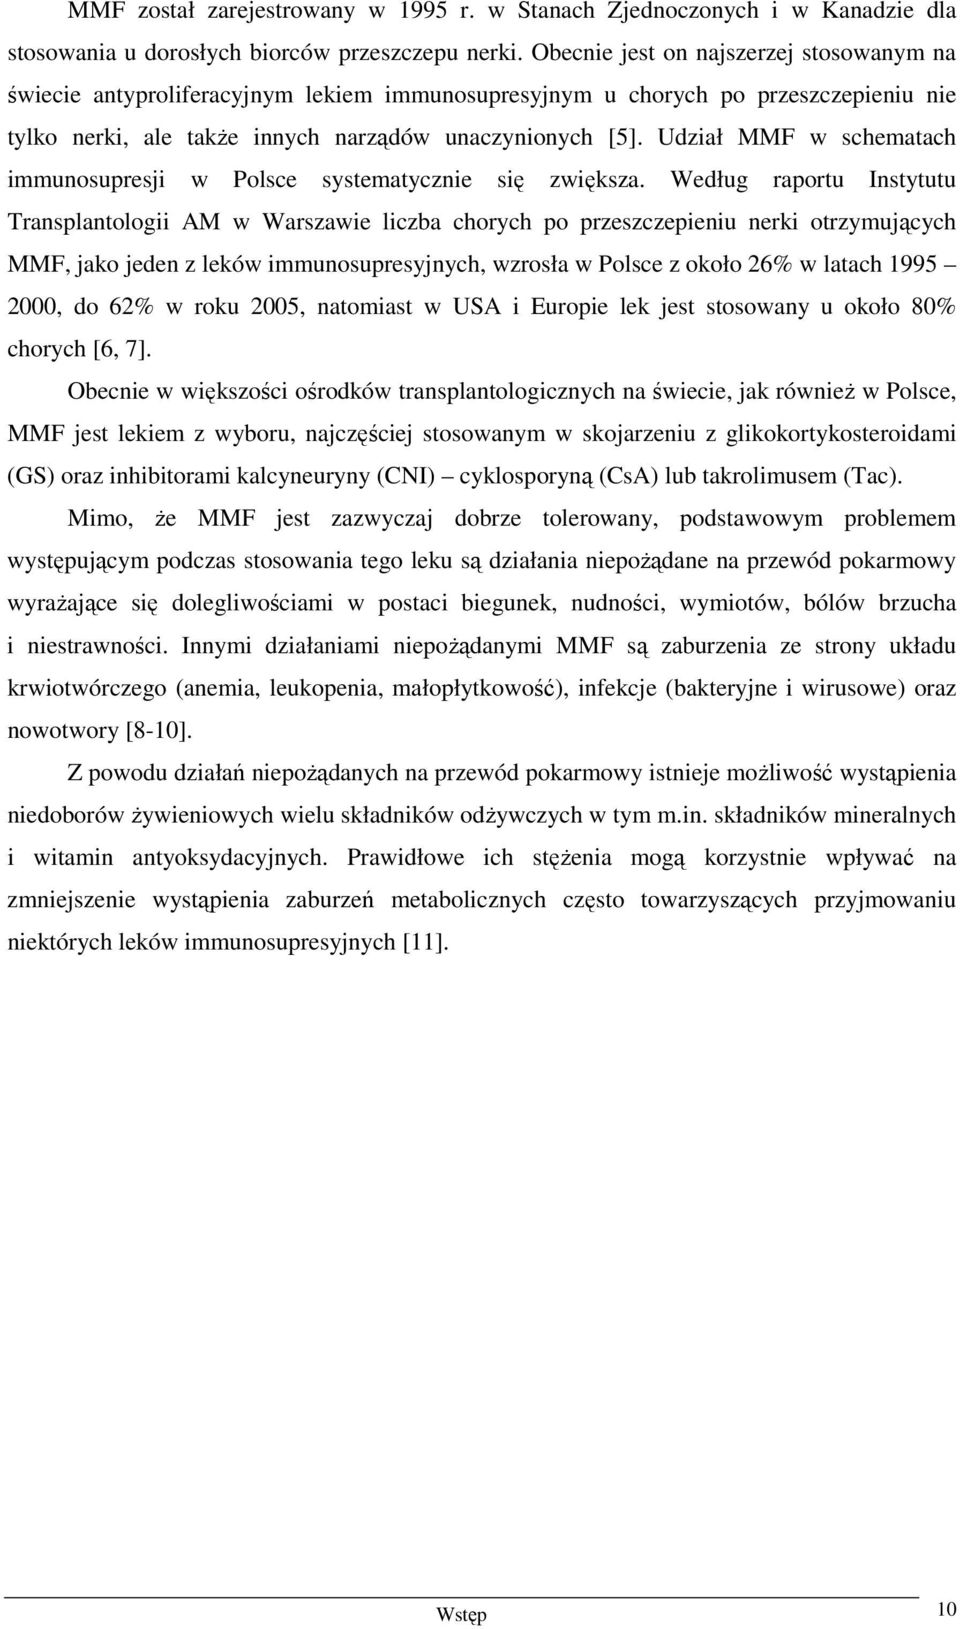 Udział MMF w schematach immunosupresji w Polsce systematycznie się zwiększa.